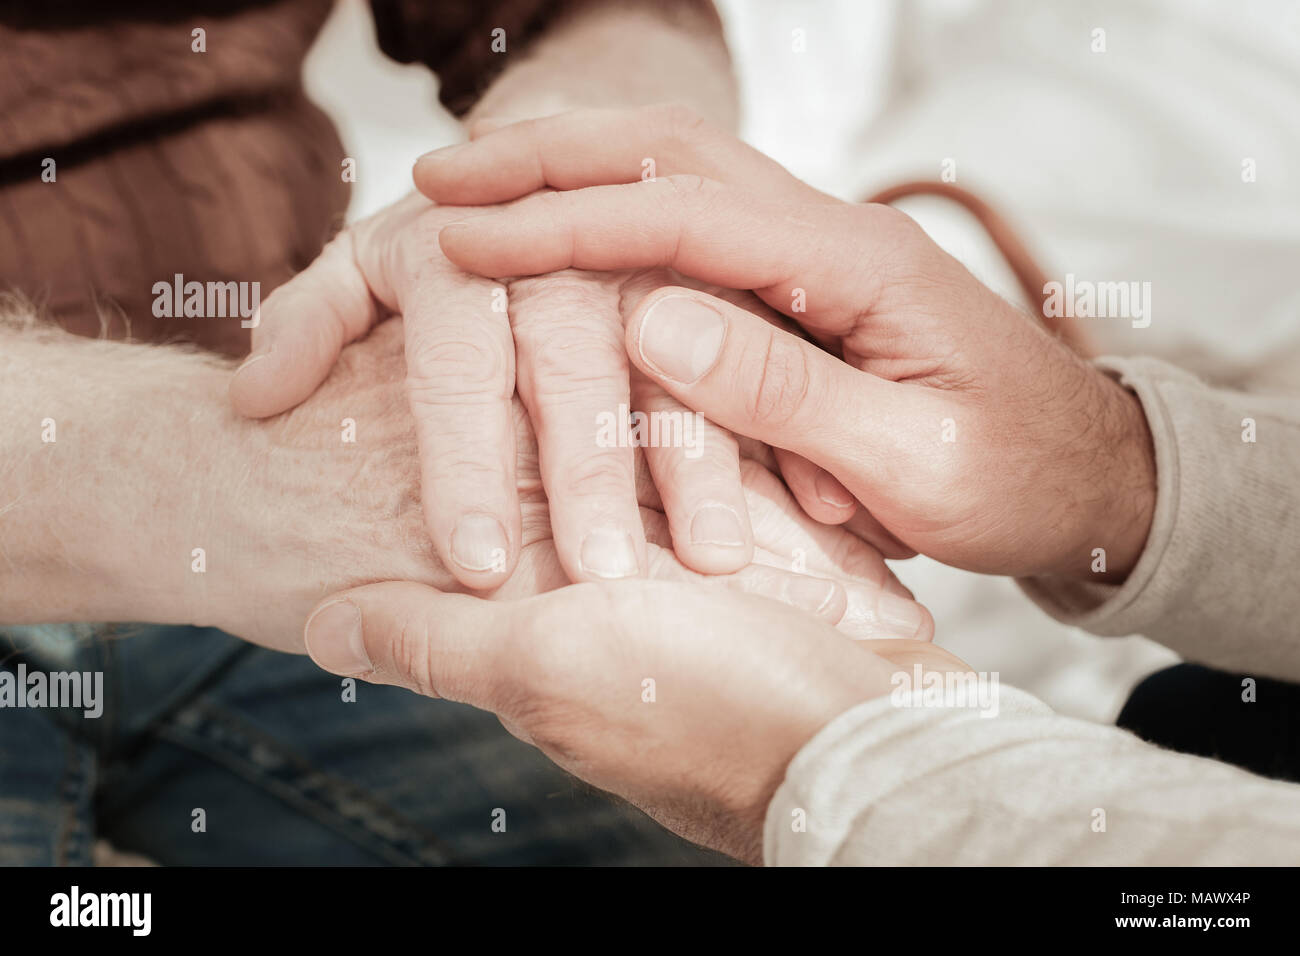 Incantevole vicino nativi tenendo la mano a vicenda. Foto Stock